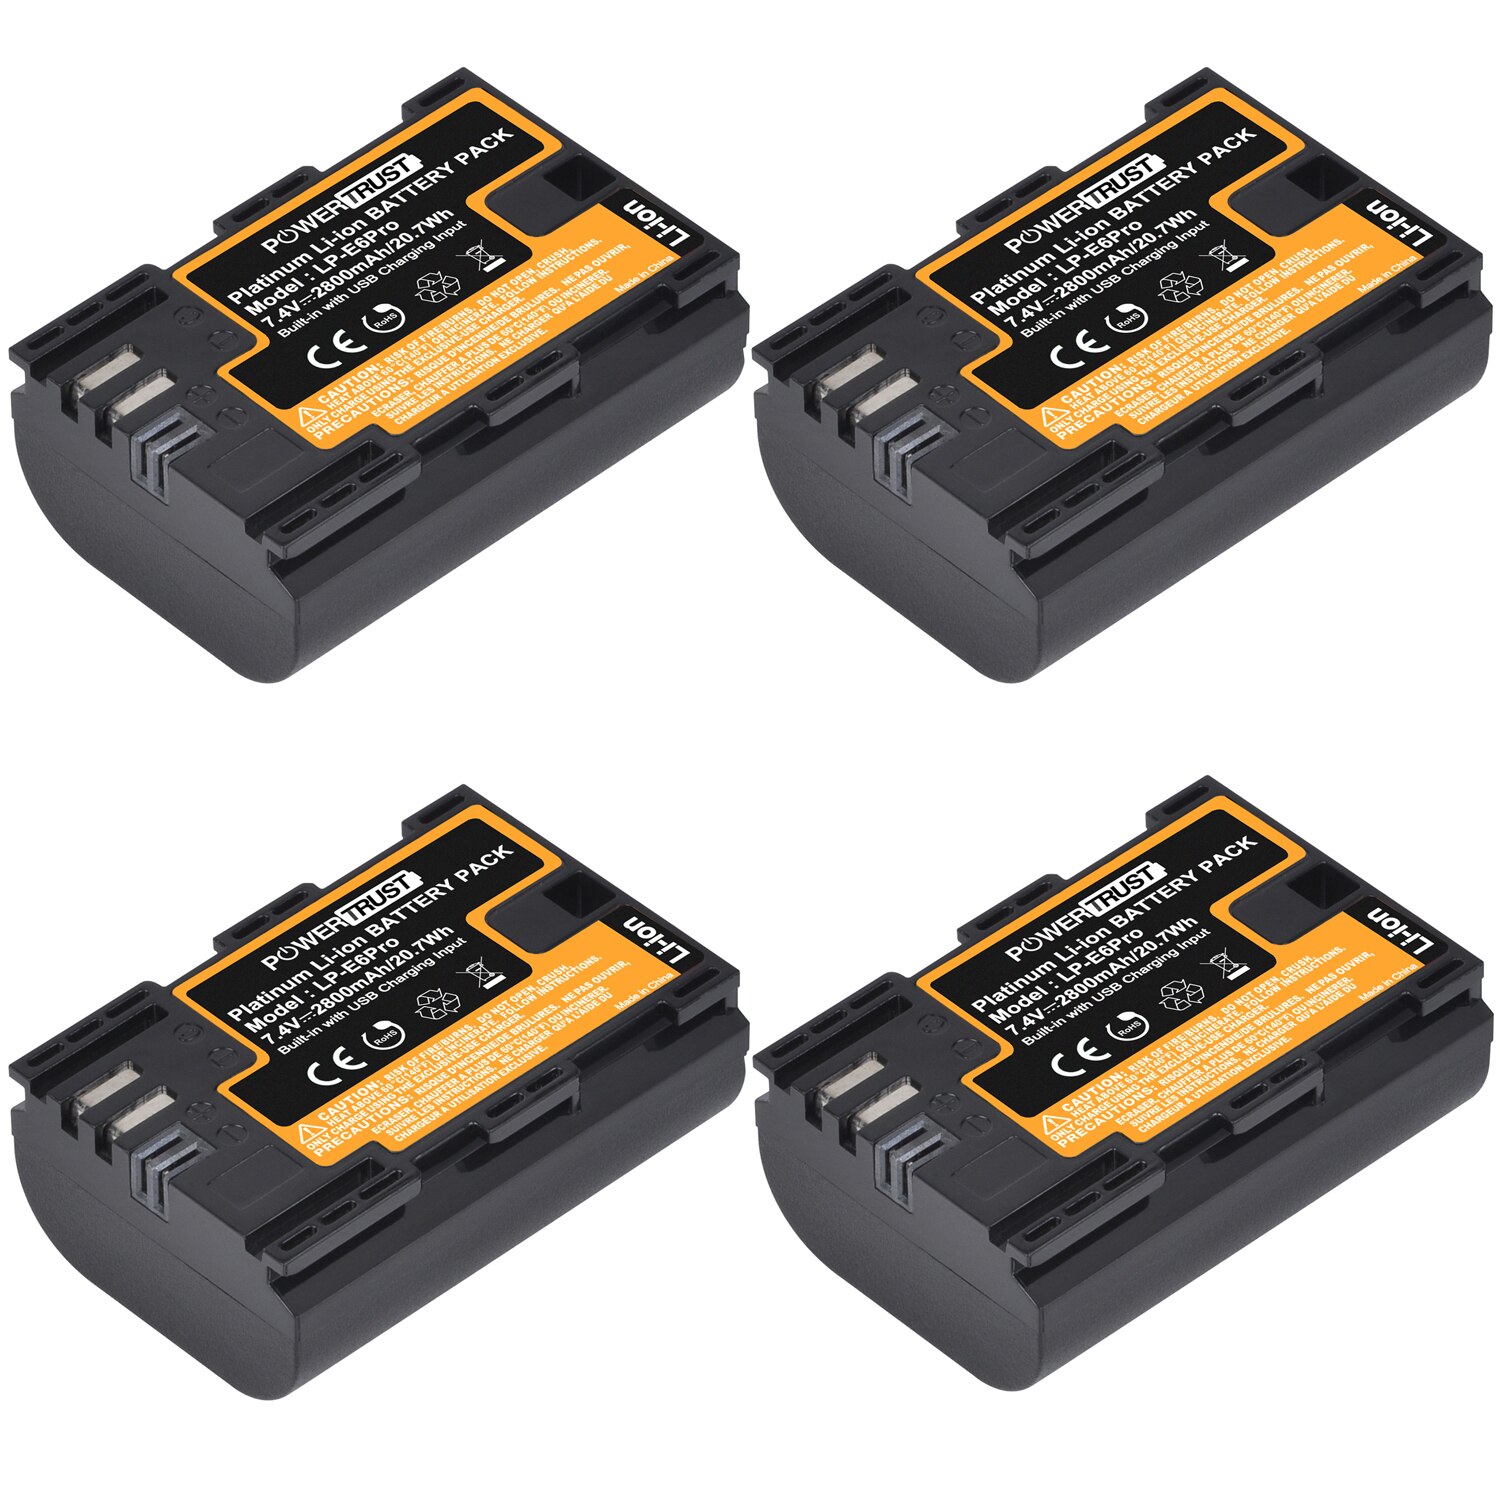 Powertrust lp -e6 lp e6 2800 mah 7.4v lpe 6 lp-e6n kamera batteri til canon 5d mark ii iii  iv 5ds 5ds r eos 6d 70d 80d kameraer: 4 lp-e6 batterier